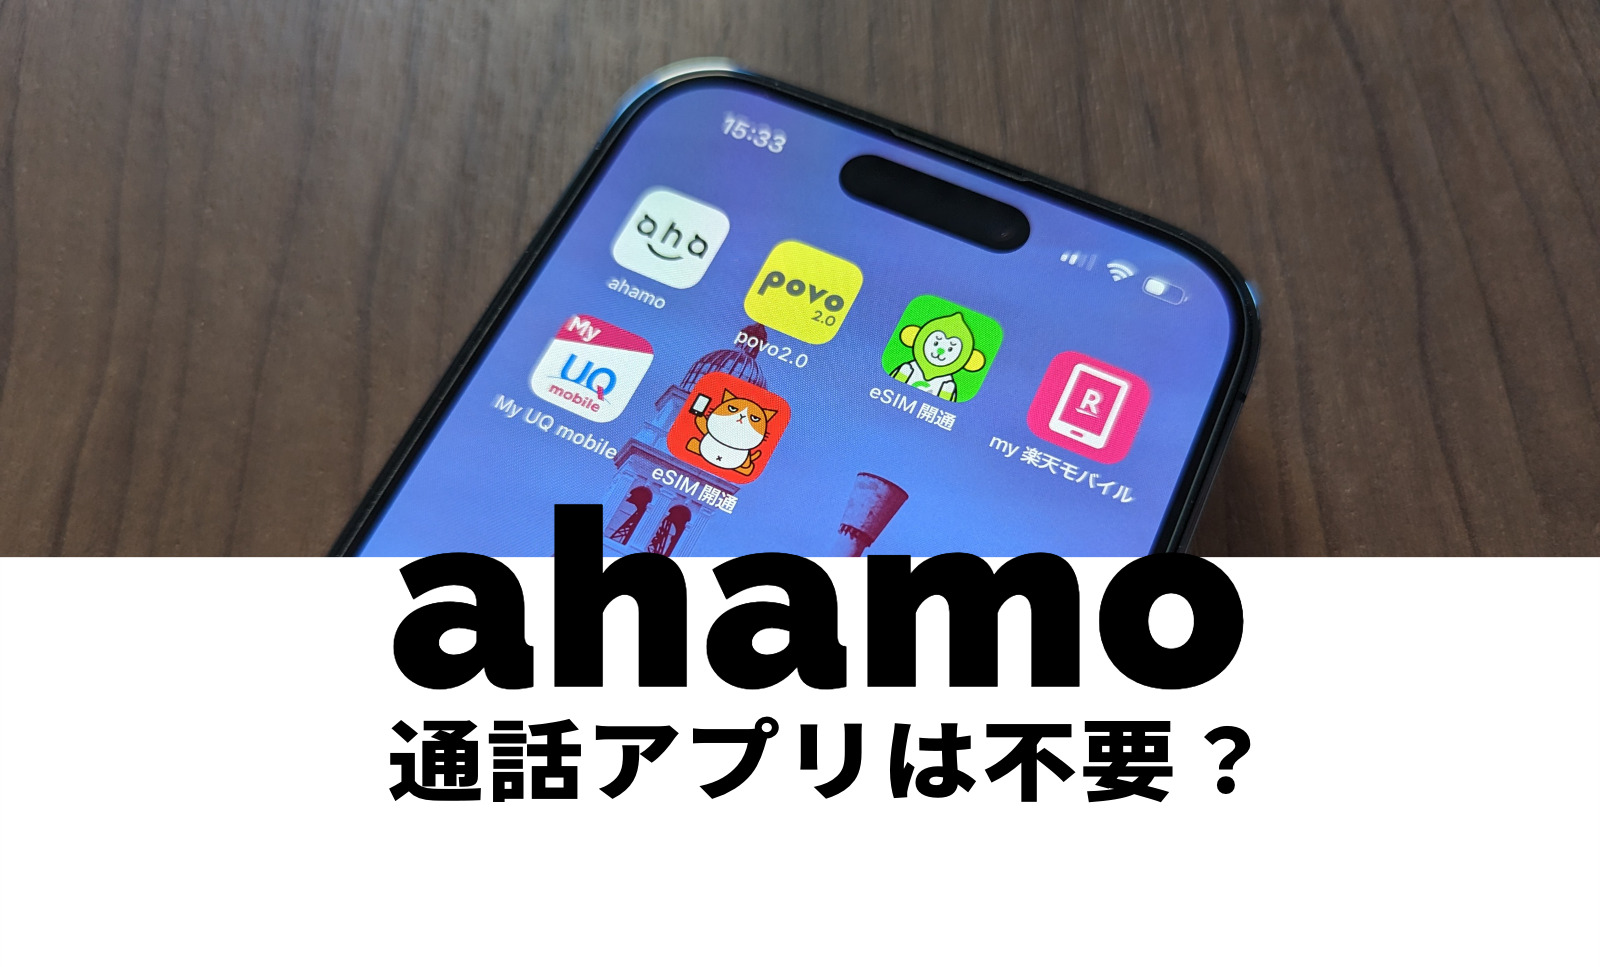 ahamo(アハモ)の通話アプリや電話アプリは不要？かけ放題でも専用アプリはいらない？のサムネイル画像